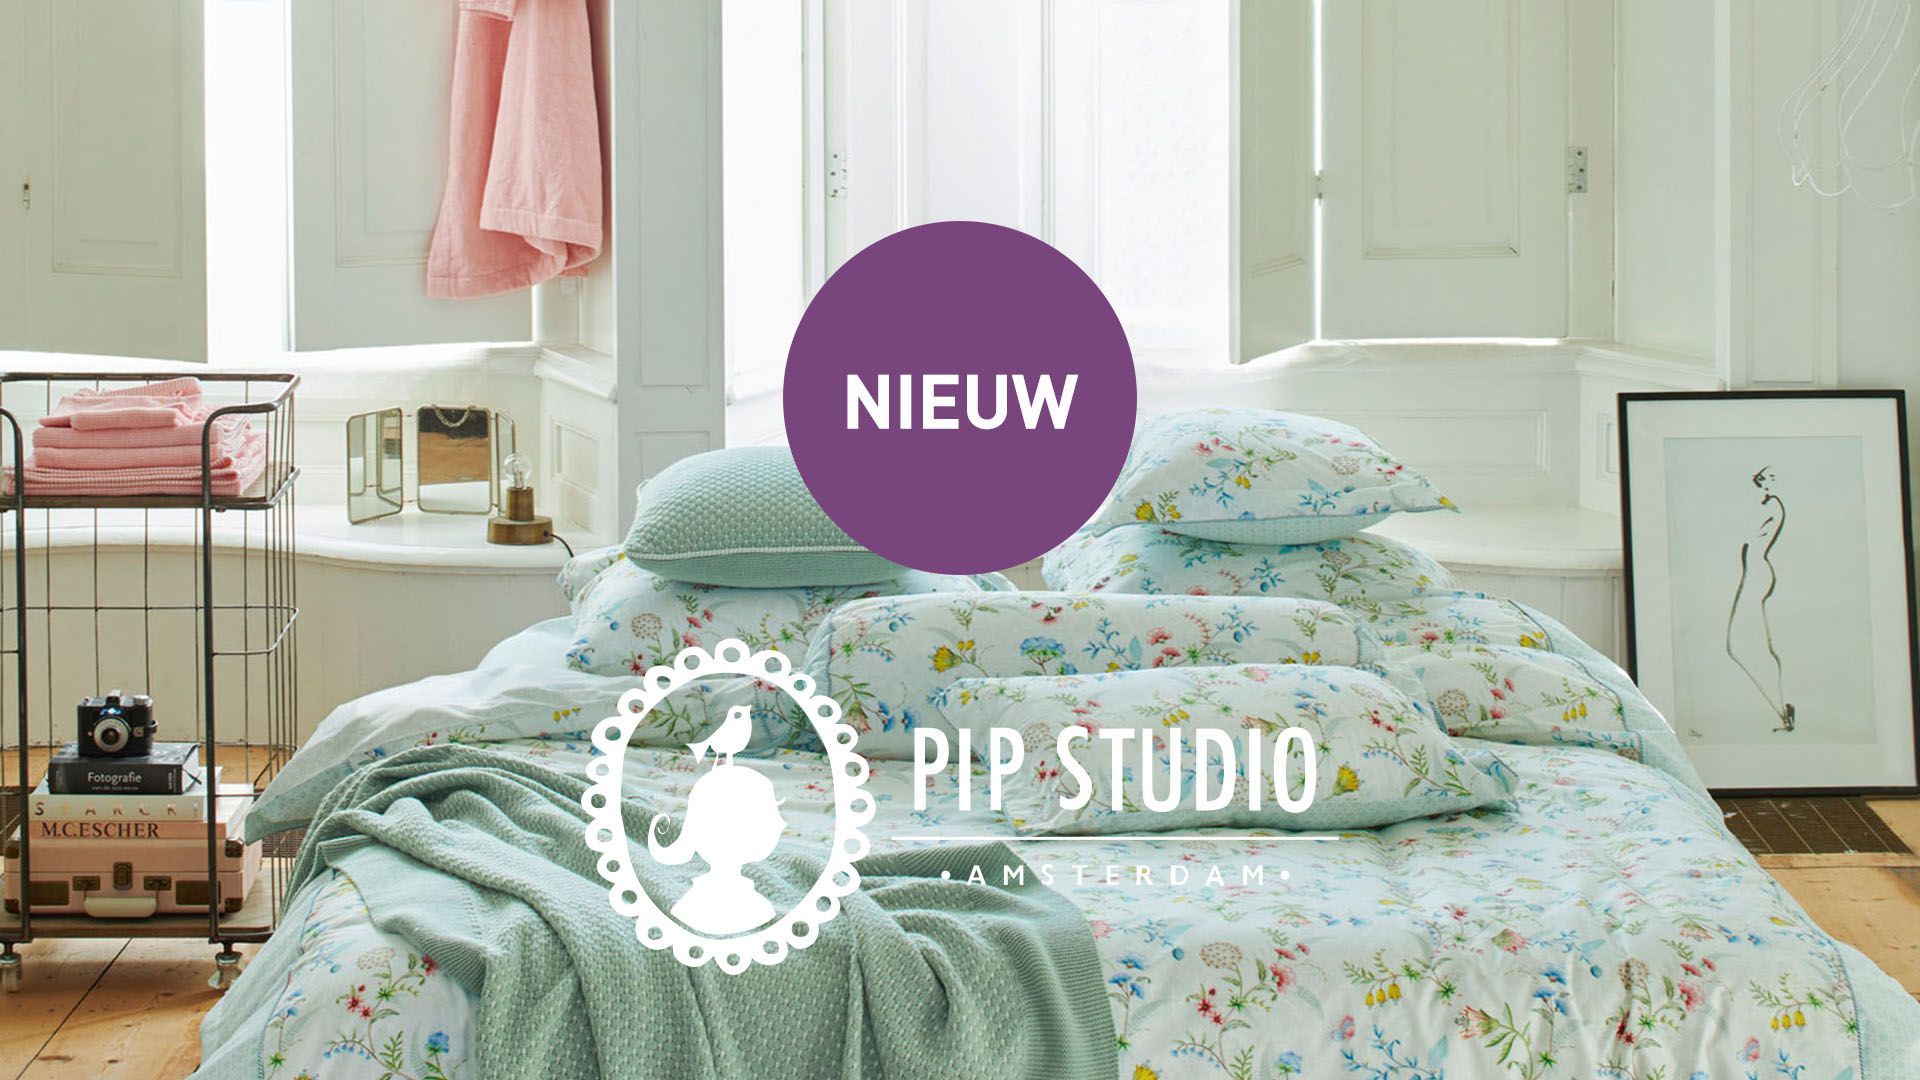 Maak leven Tussen Plaatsen Nieuw: de vrolijke bed collectie van Pip Studio